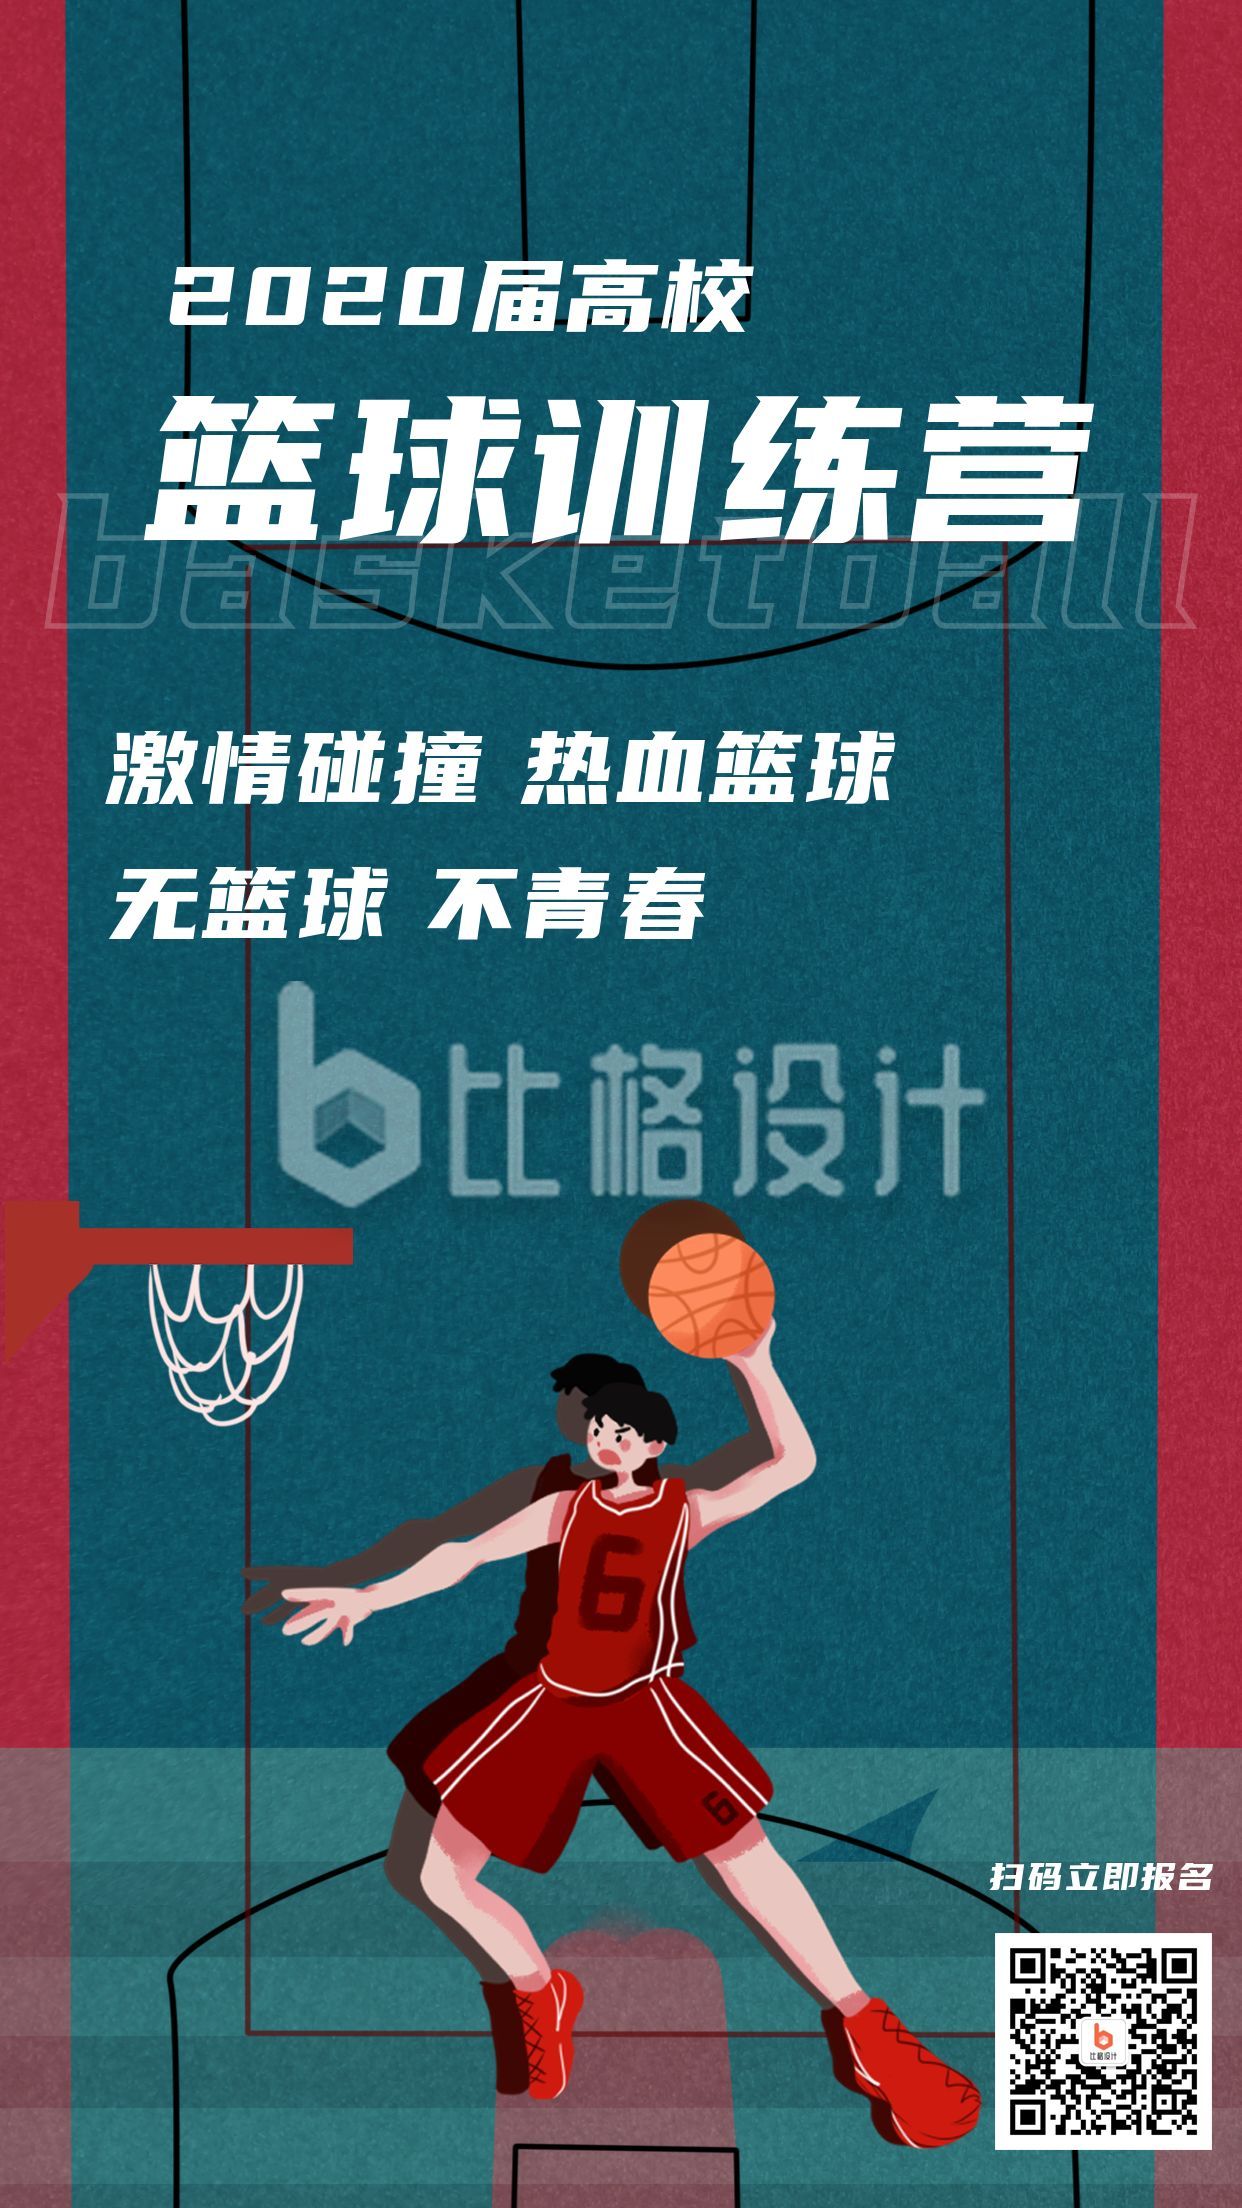 高校运动篮球比赛训练营招生报名俱乐部兴趣班宣传社团招新手机海报